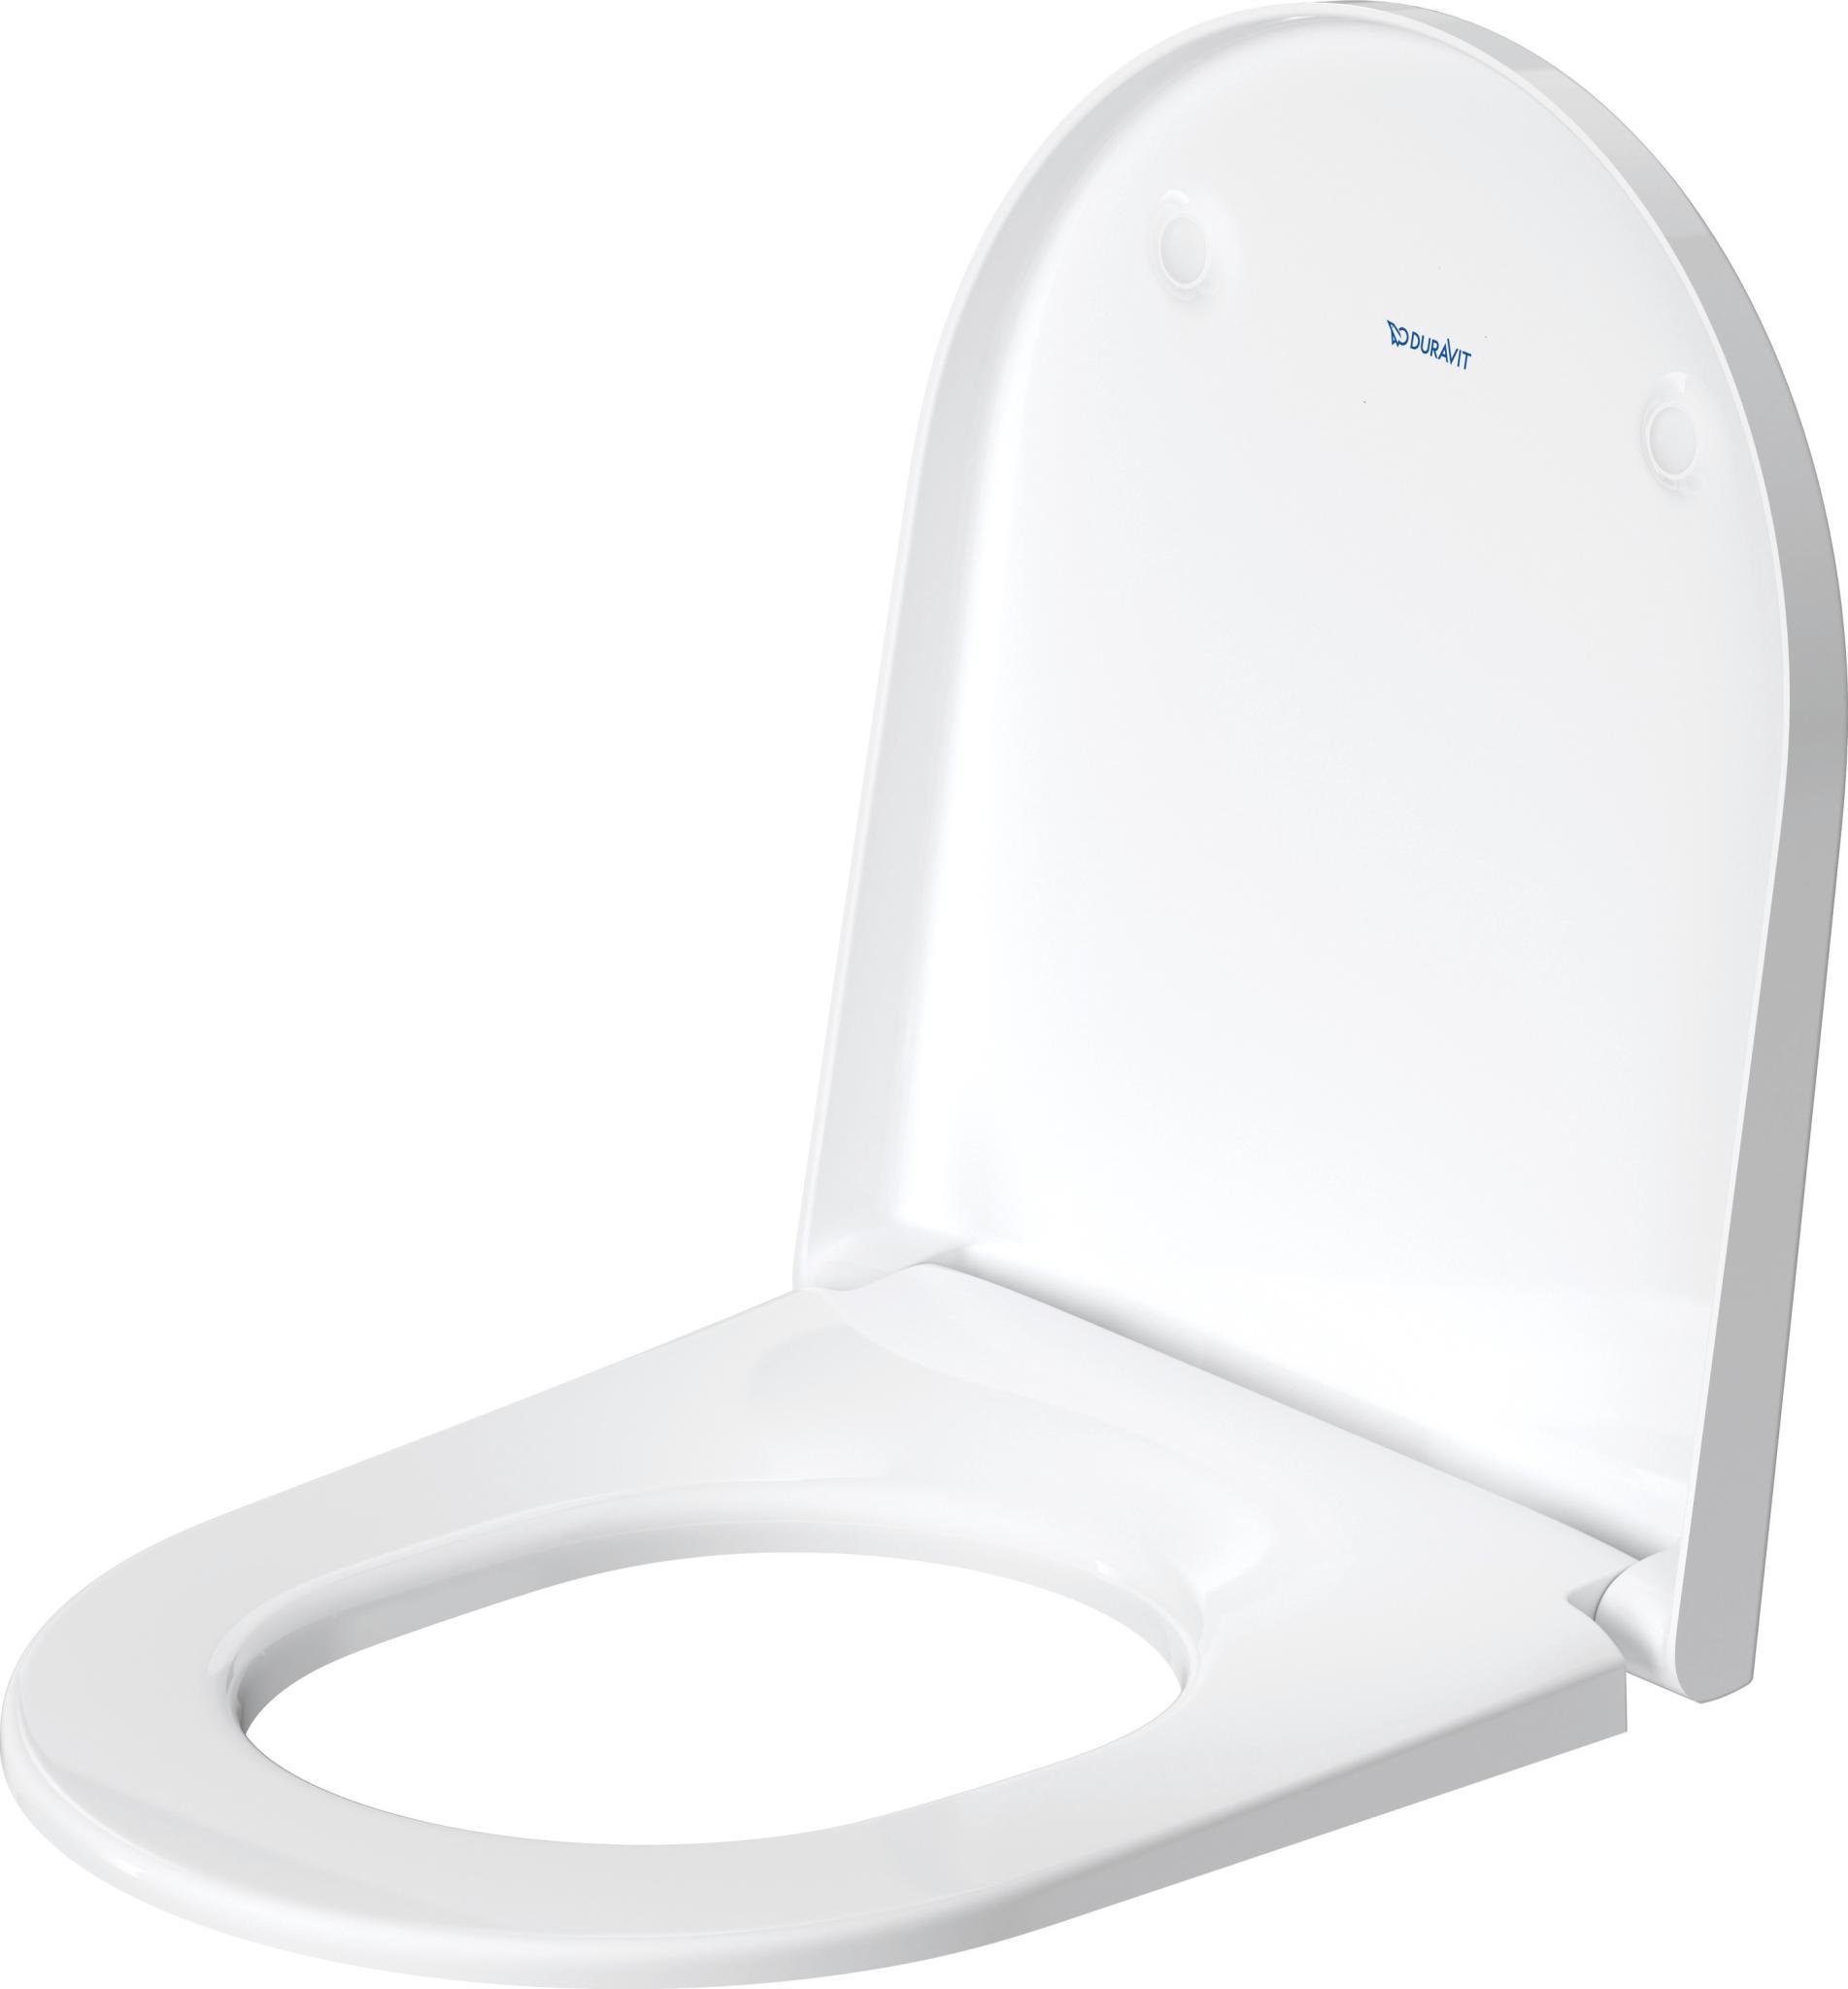 Duravit WC-Sitz DURAVIT D-Neo WC-Sitz Toiletten Sitz 376x441x43 mm NEU